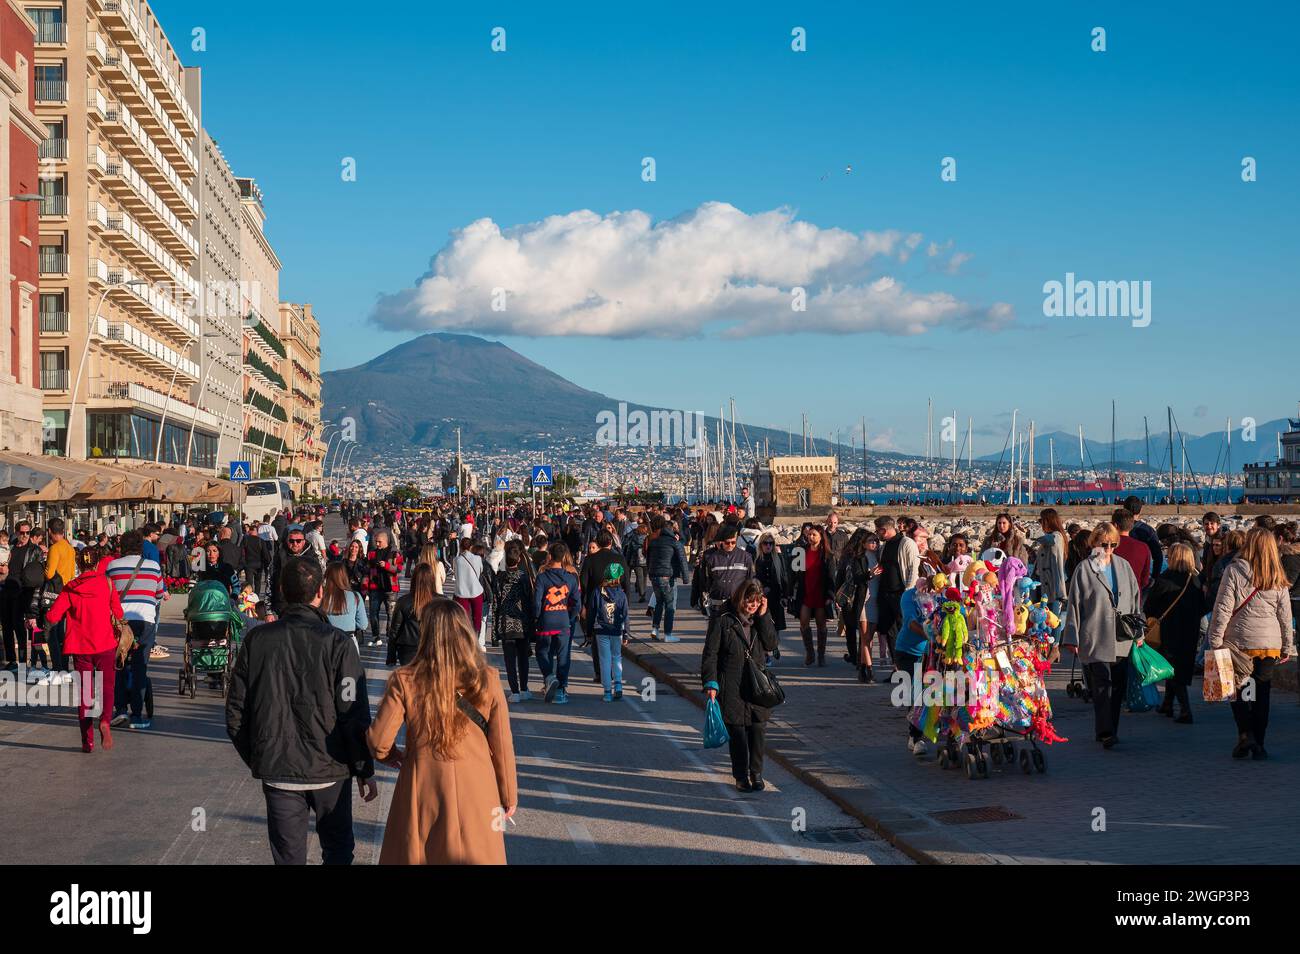 Neapel, Italien - 18. Dezember 2022: Eine geschäftige Menge von Touristen und Einwohnern, die vor einer majestätischen Kulisse des Vesuv-Vulkans spazieren Stockfoto